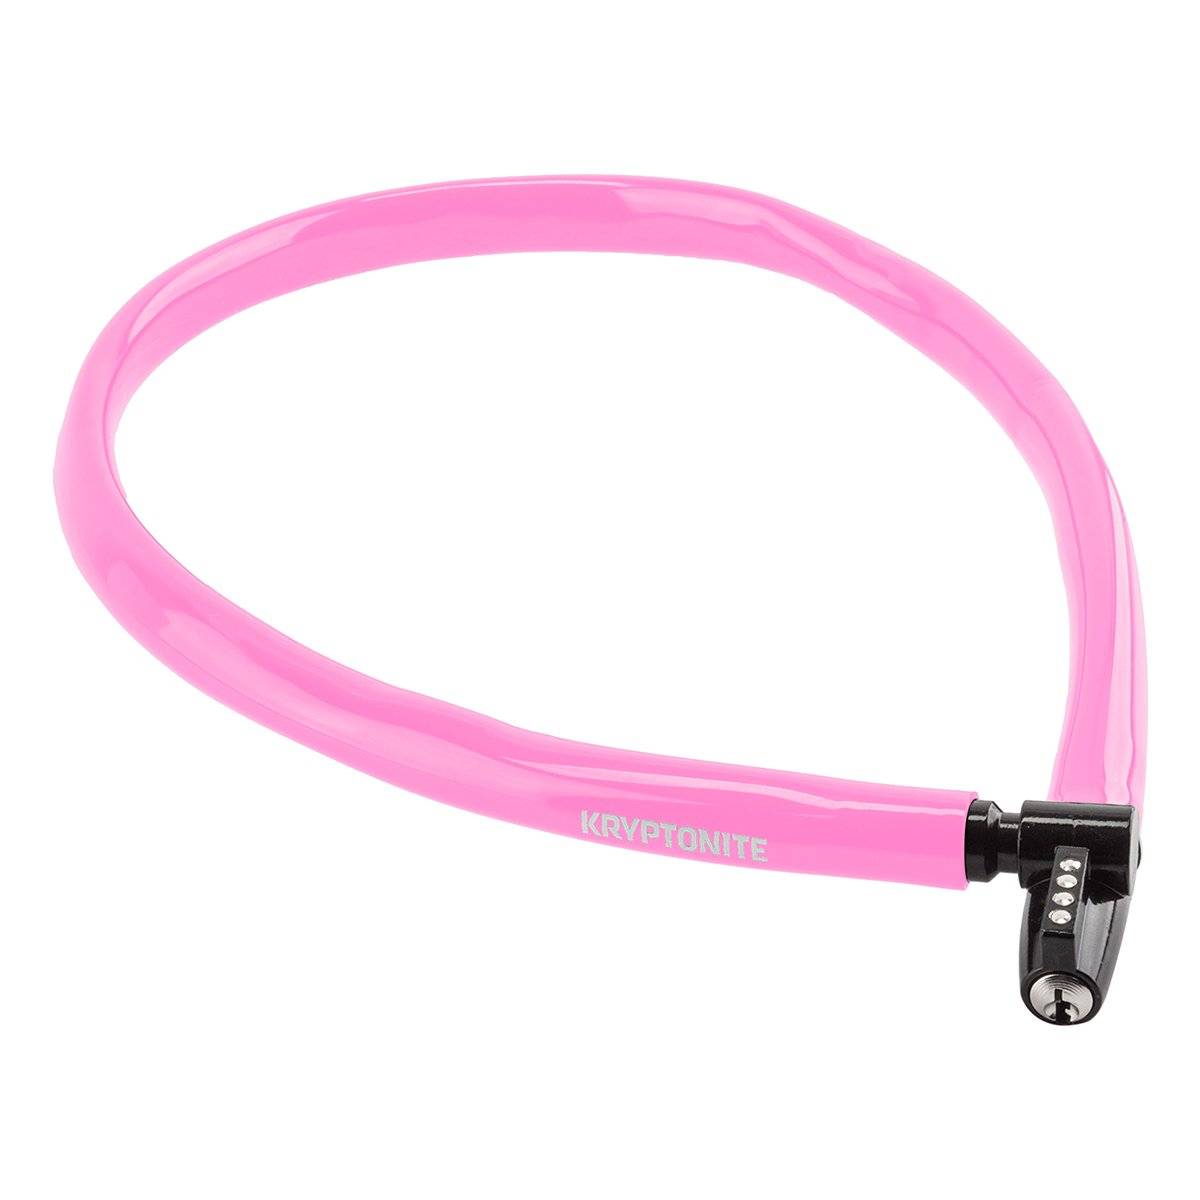 Велосипедный замок Kryptonite Cables KEEPER 665 KEY CBL тросовый, на ключ, 6 x 650 мм, розовый